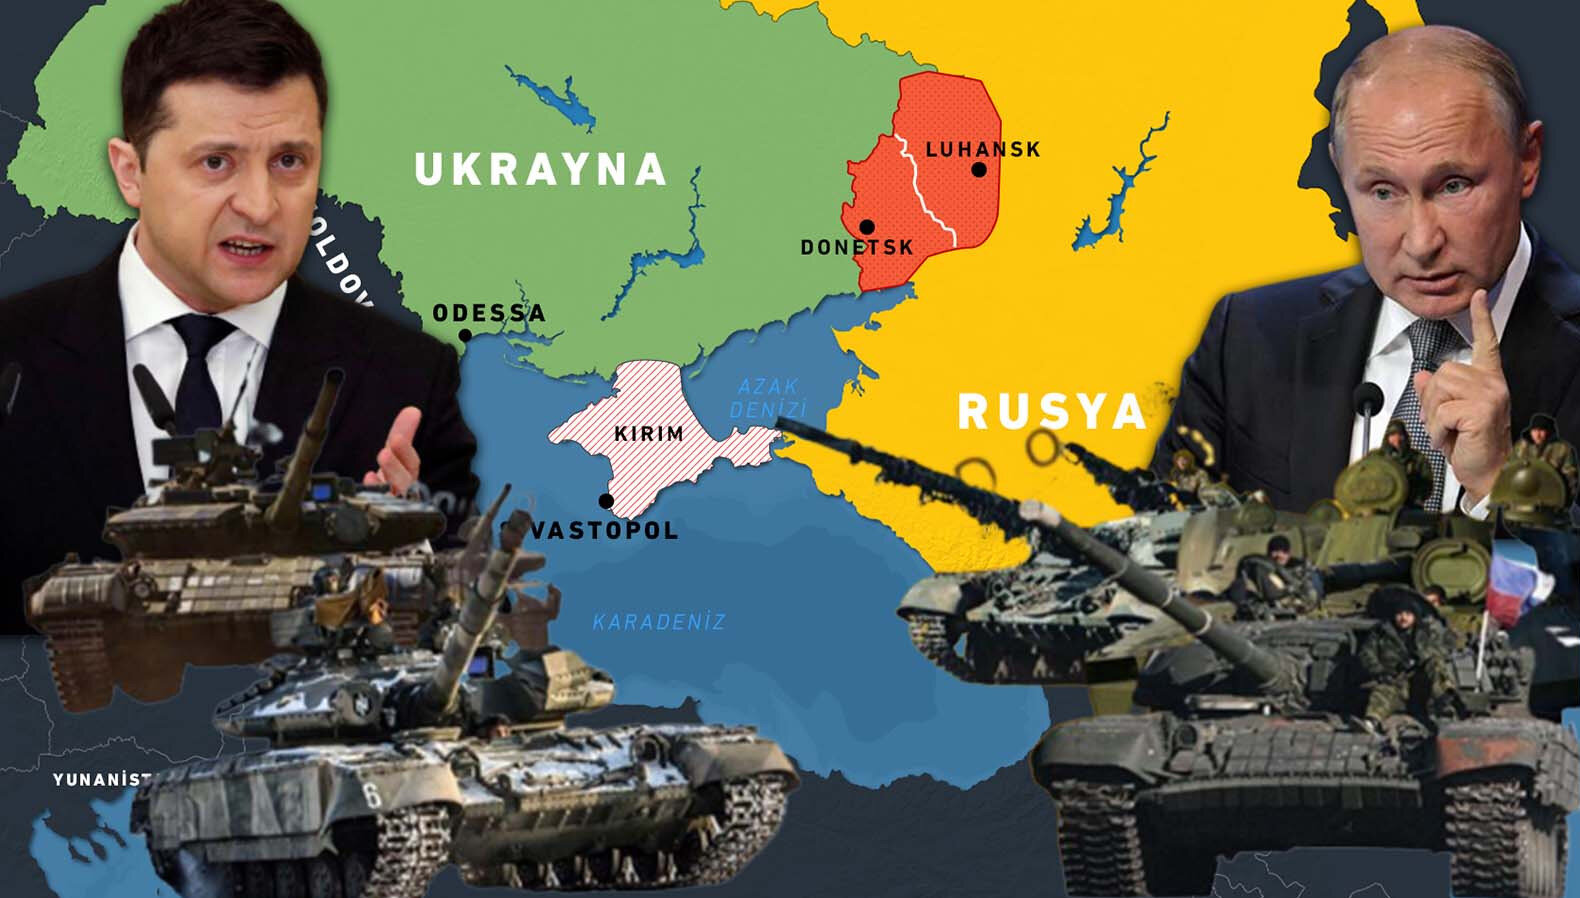 Ukrayna savaşı: Rusya, üç gün içinde ikinci şafak öncesi füze saldırısını başlattı